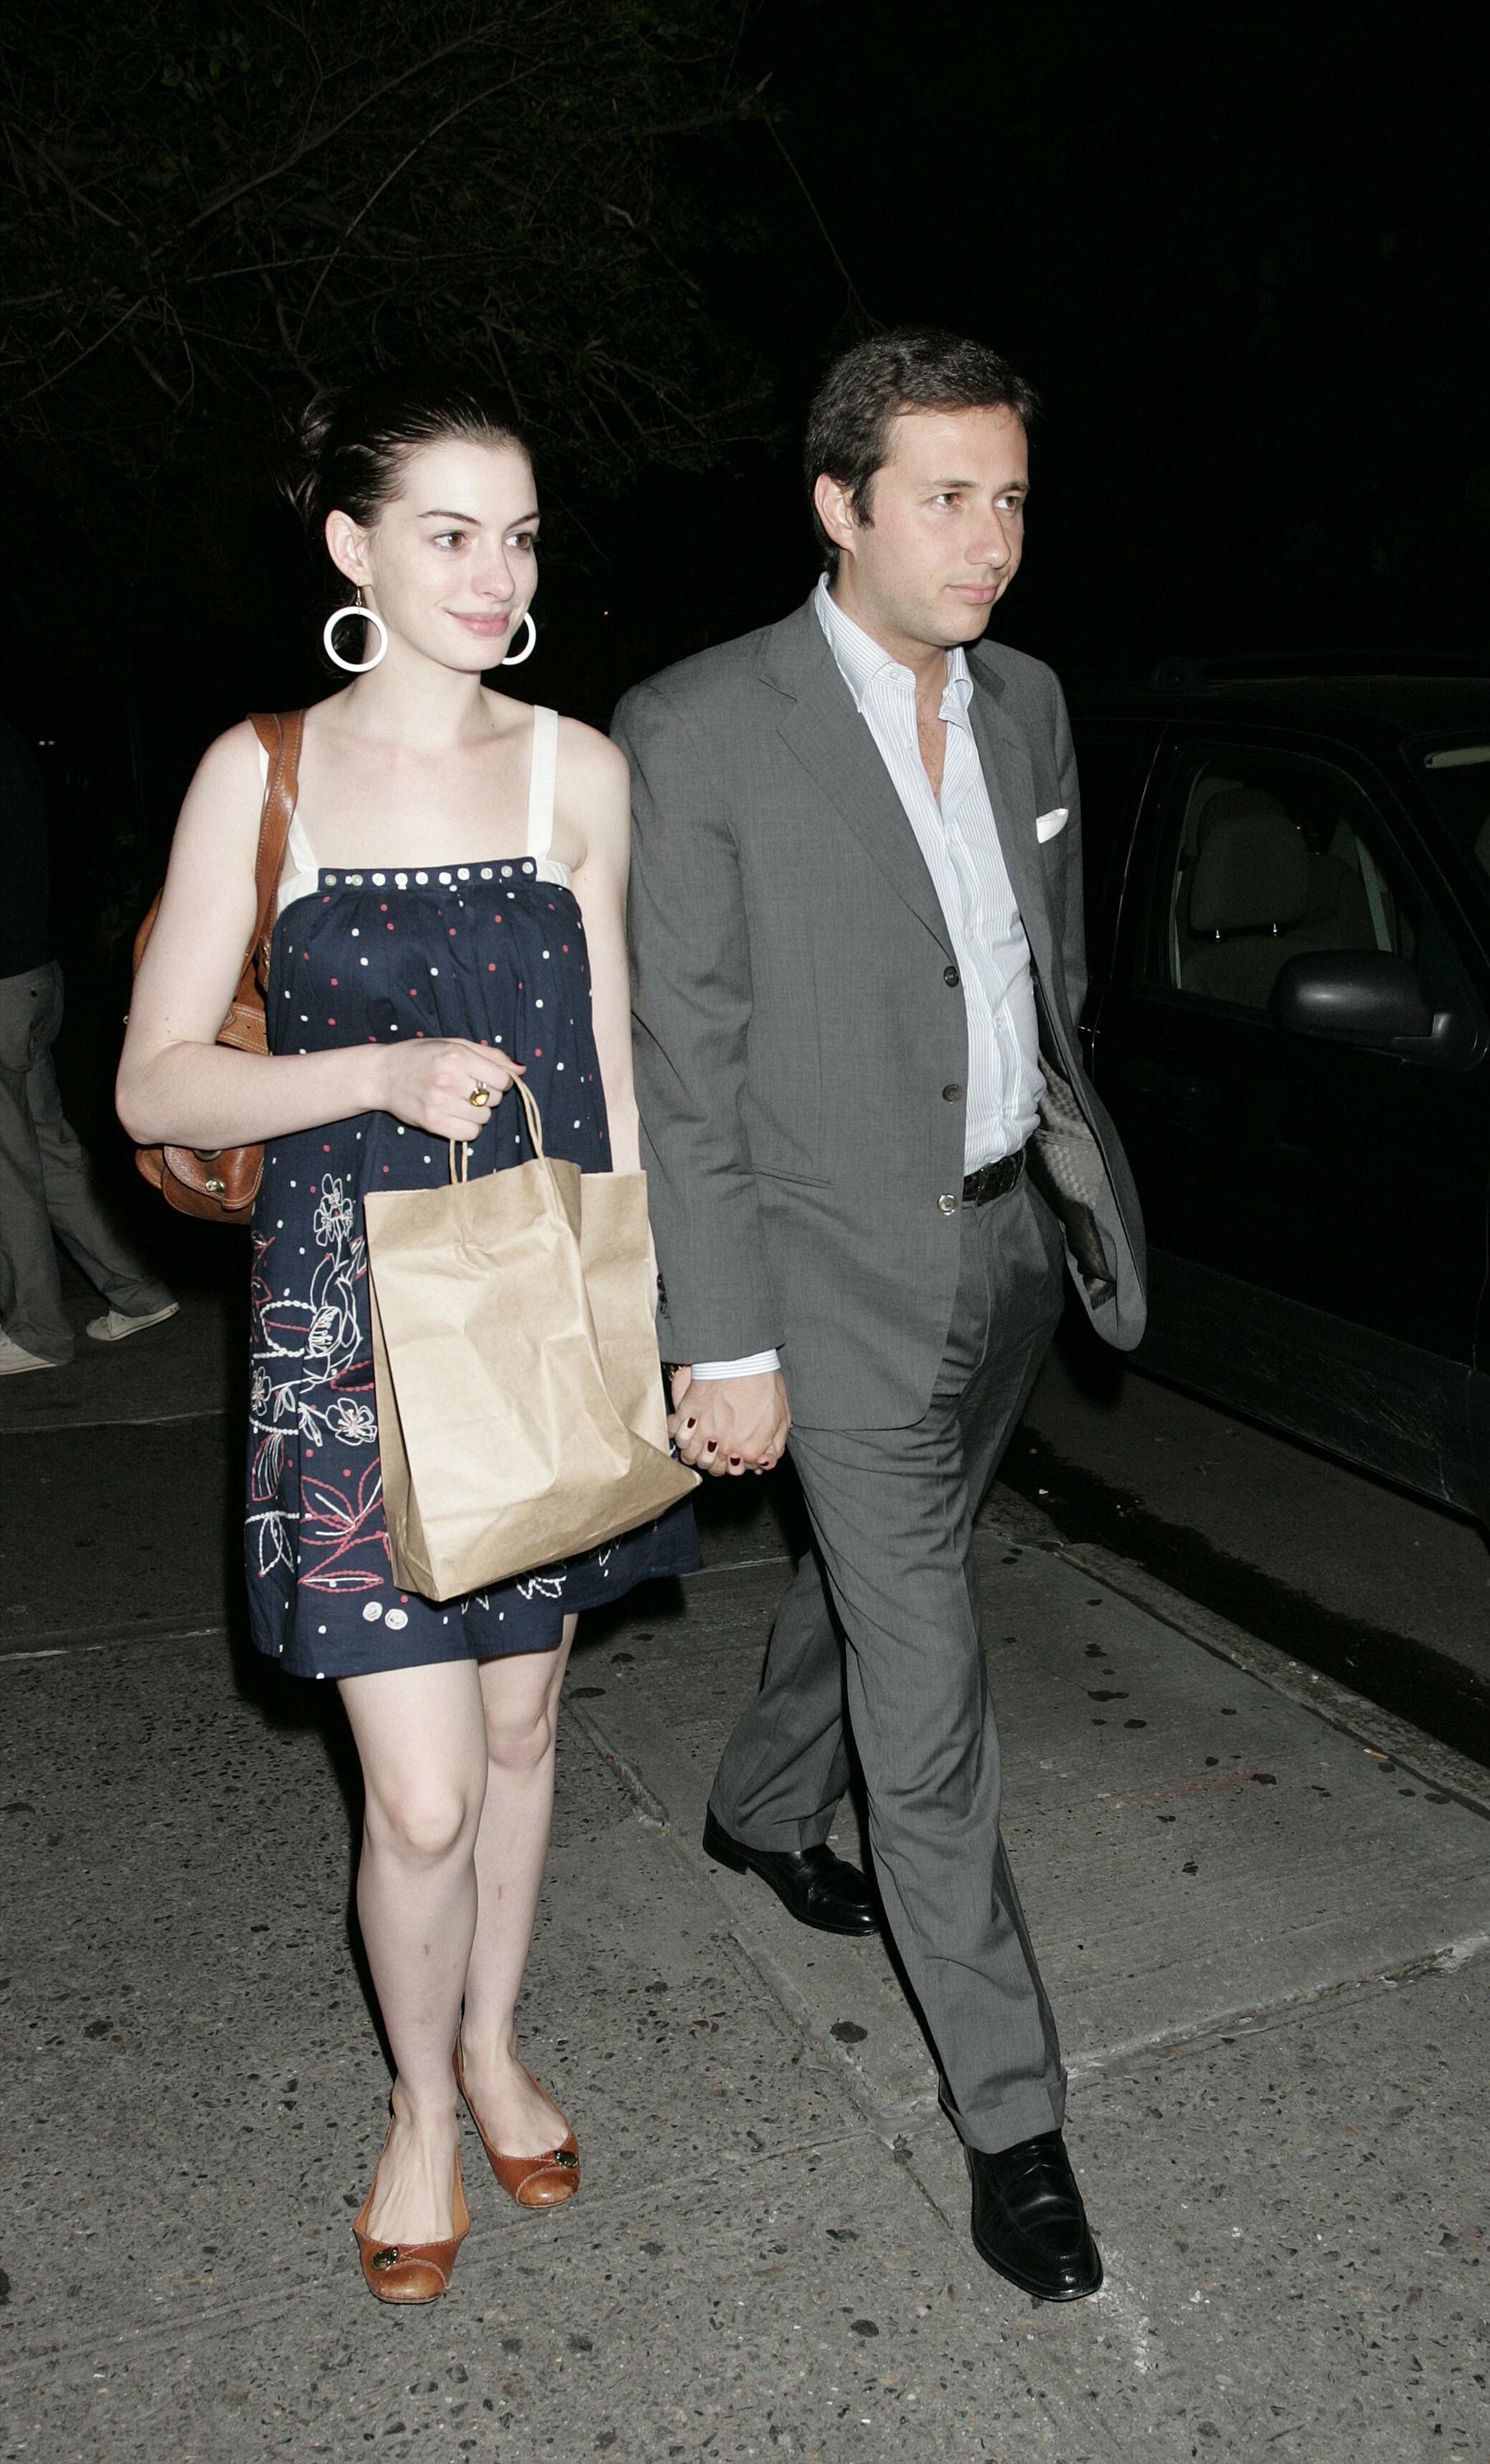 Anne Hathaway and boyfriend leave a lower Manhatten restaurant-5